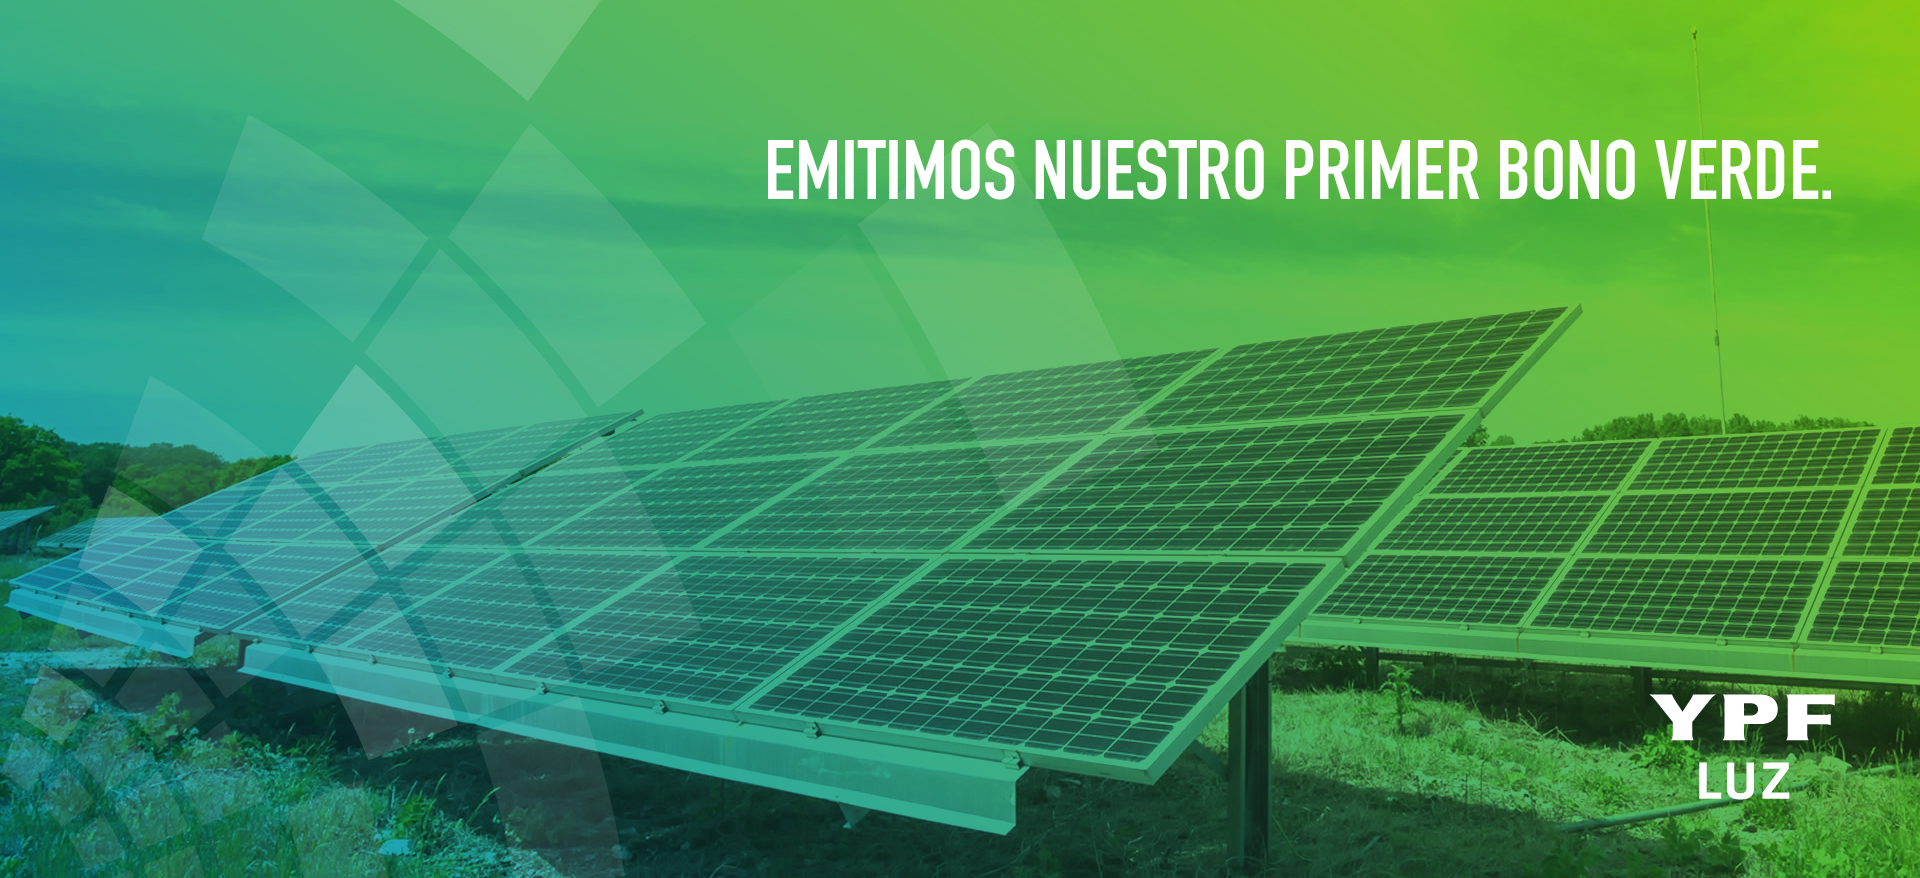 YPF Luz emitió su primer bono verde por 63,9 millones de dólares para financiar su próximo proyecto renovable